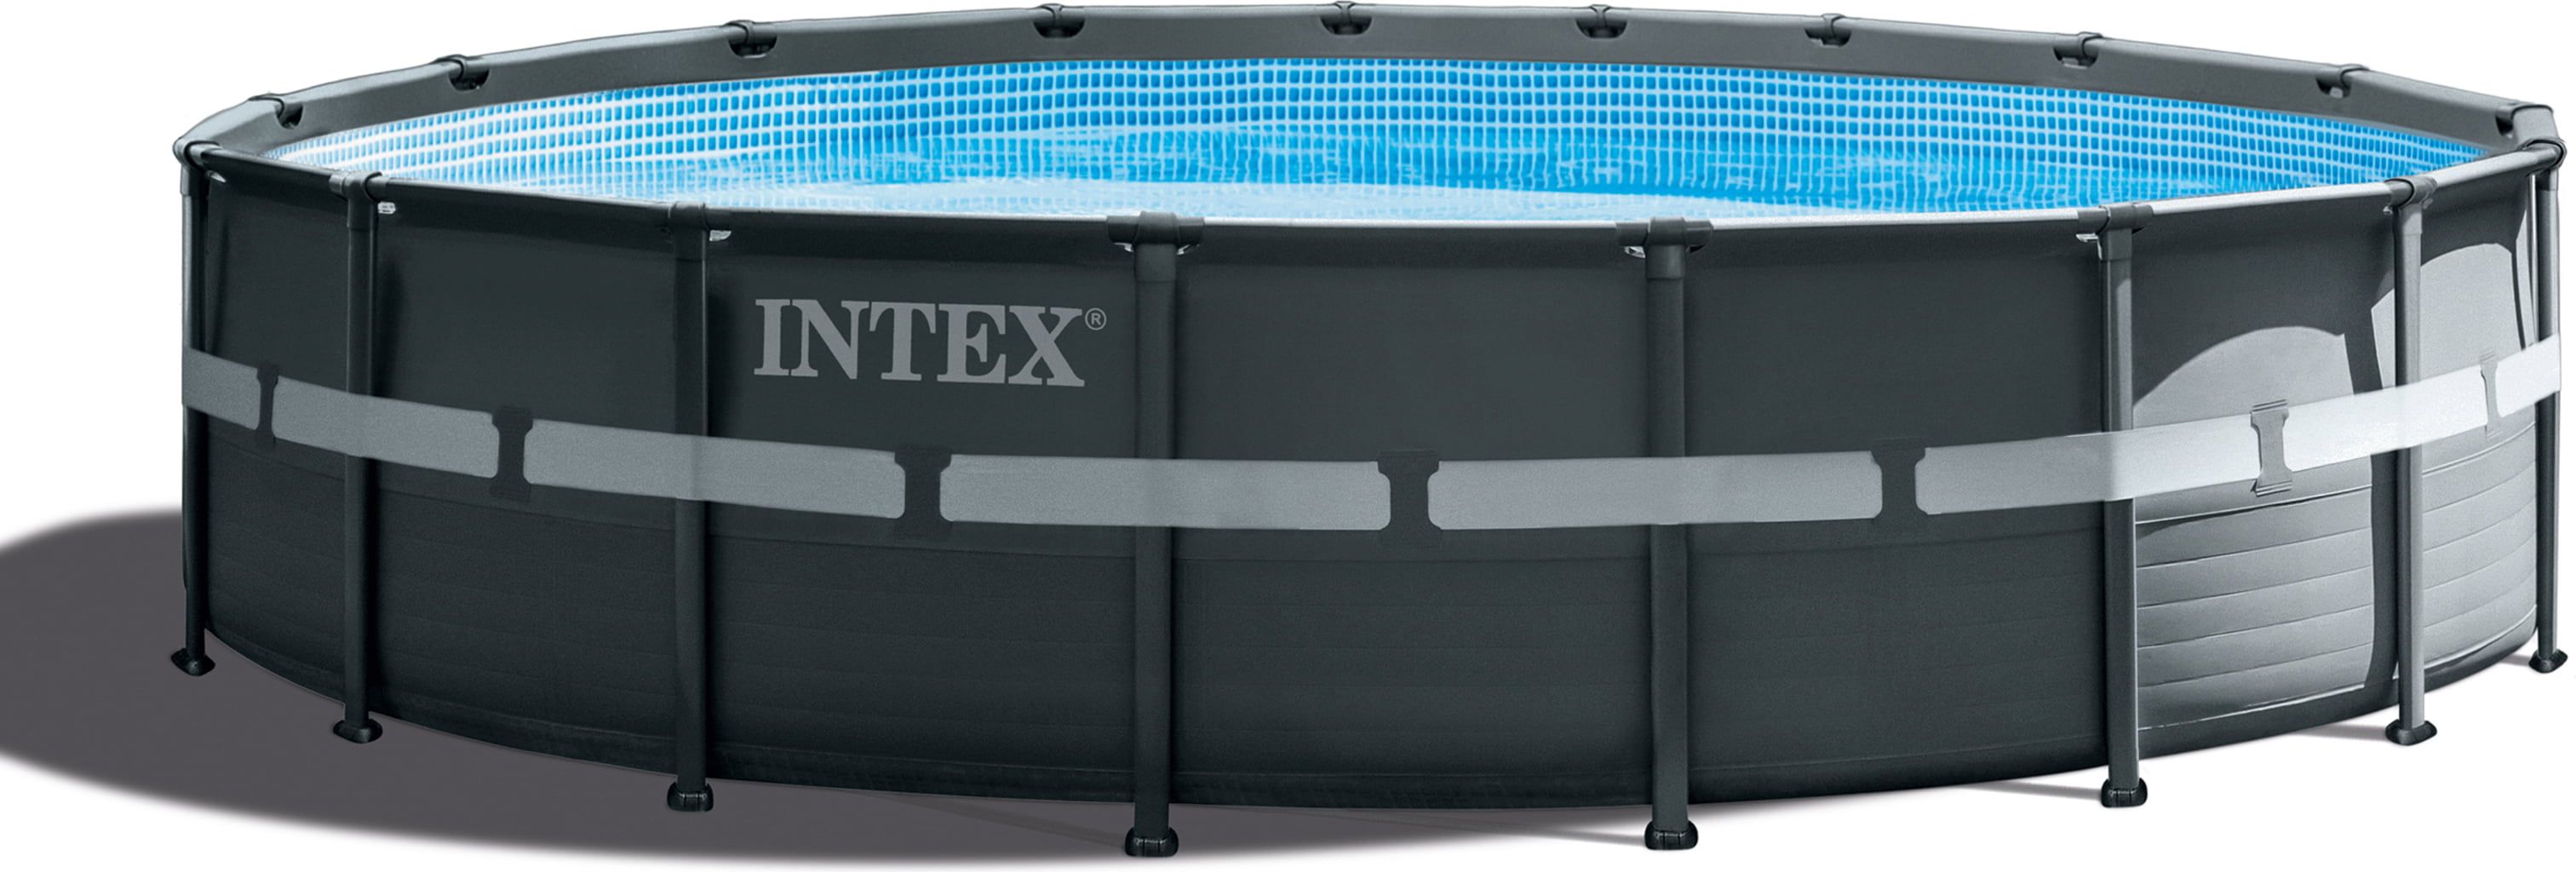 Intex Piscine Ultra XTR Ronde Ø 549 x 132 cm - Set piscine avec système de filtration sable, raccords, échelle de sécurité, bâche, tapis de sol